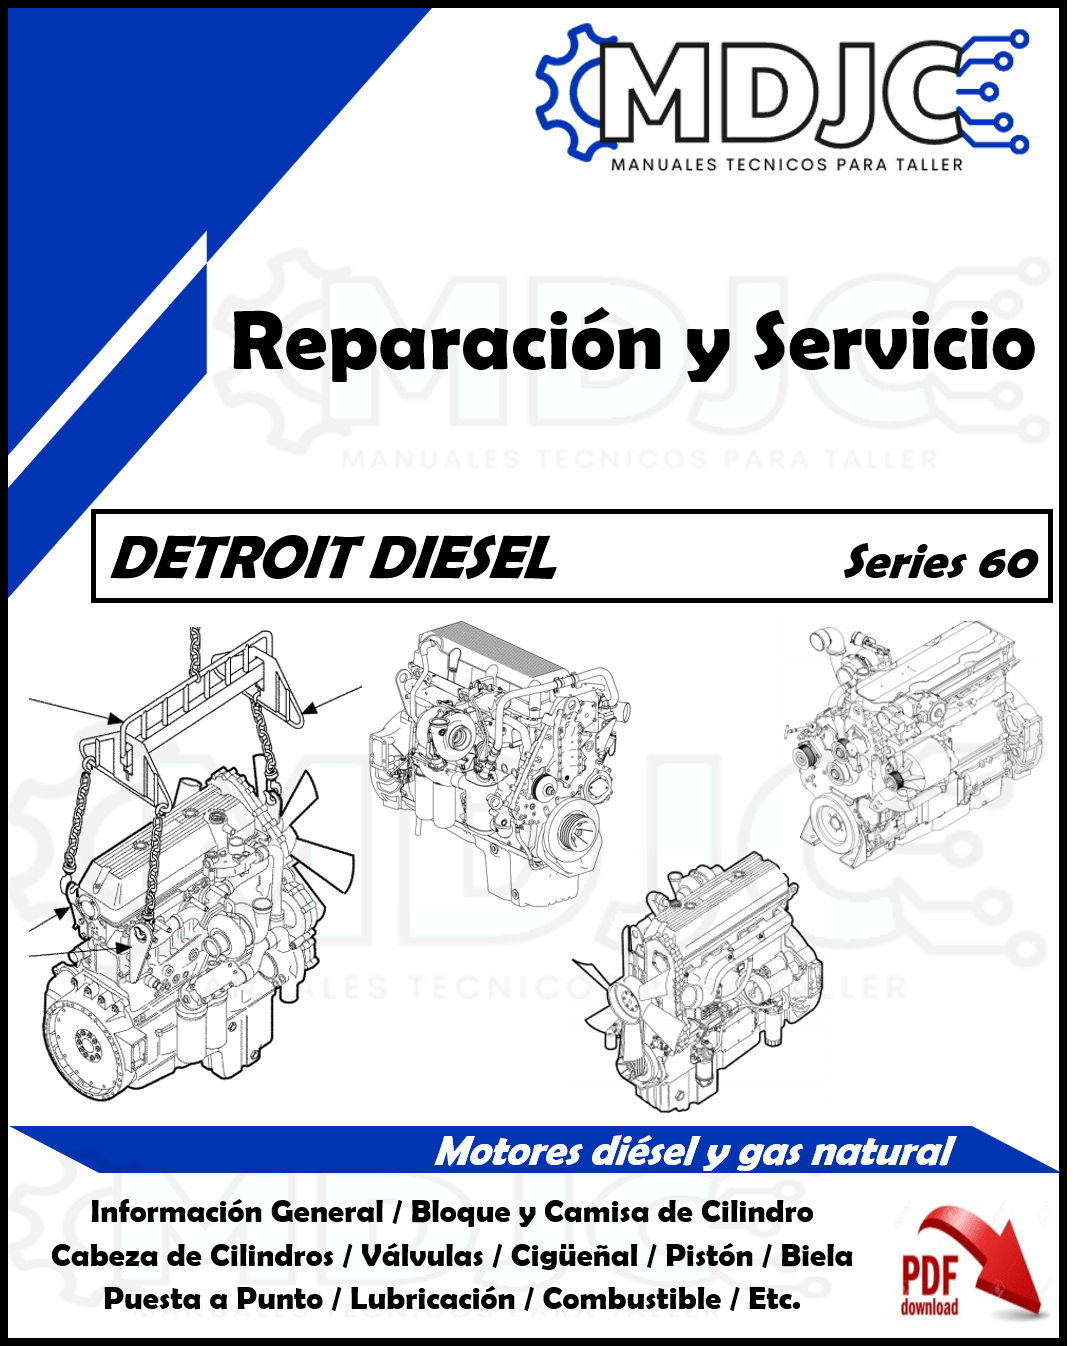 Manual de Taller (Reparación y Servicio) Motor Detroit Diesel Serie 60